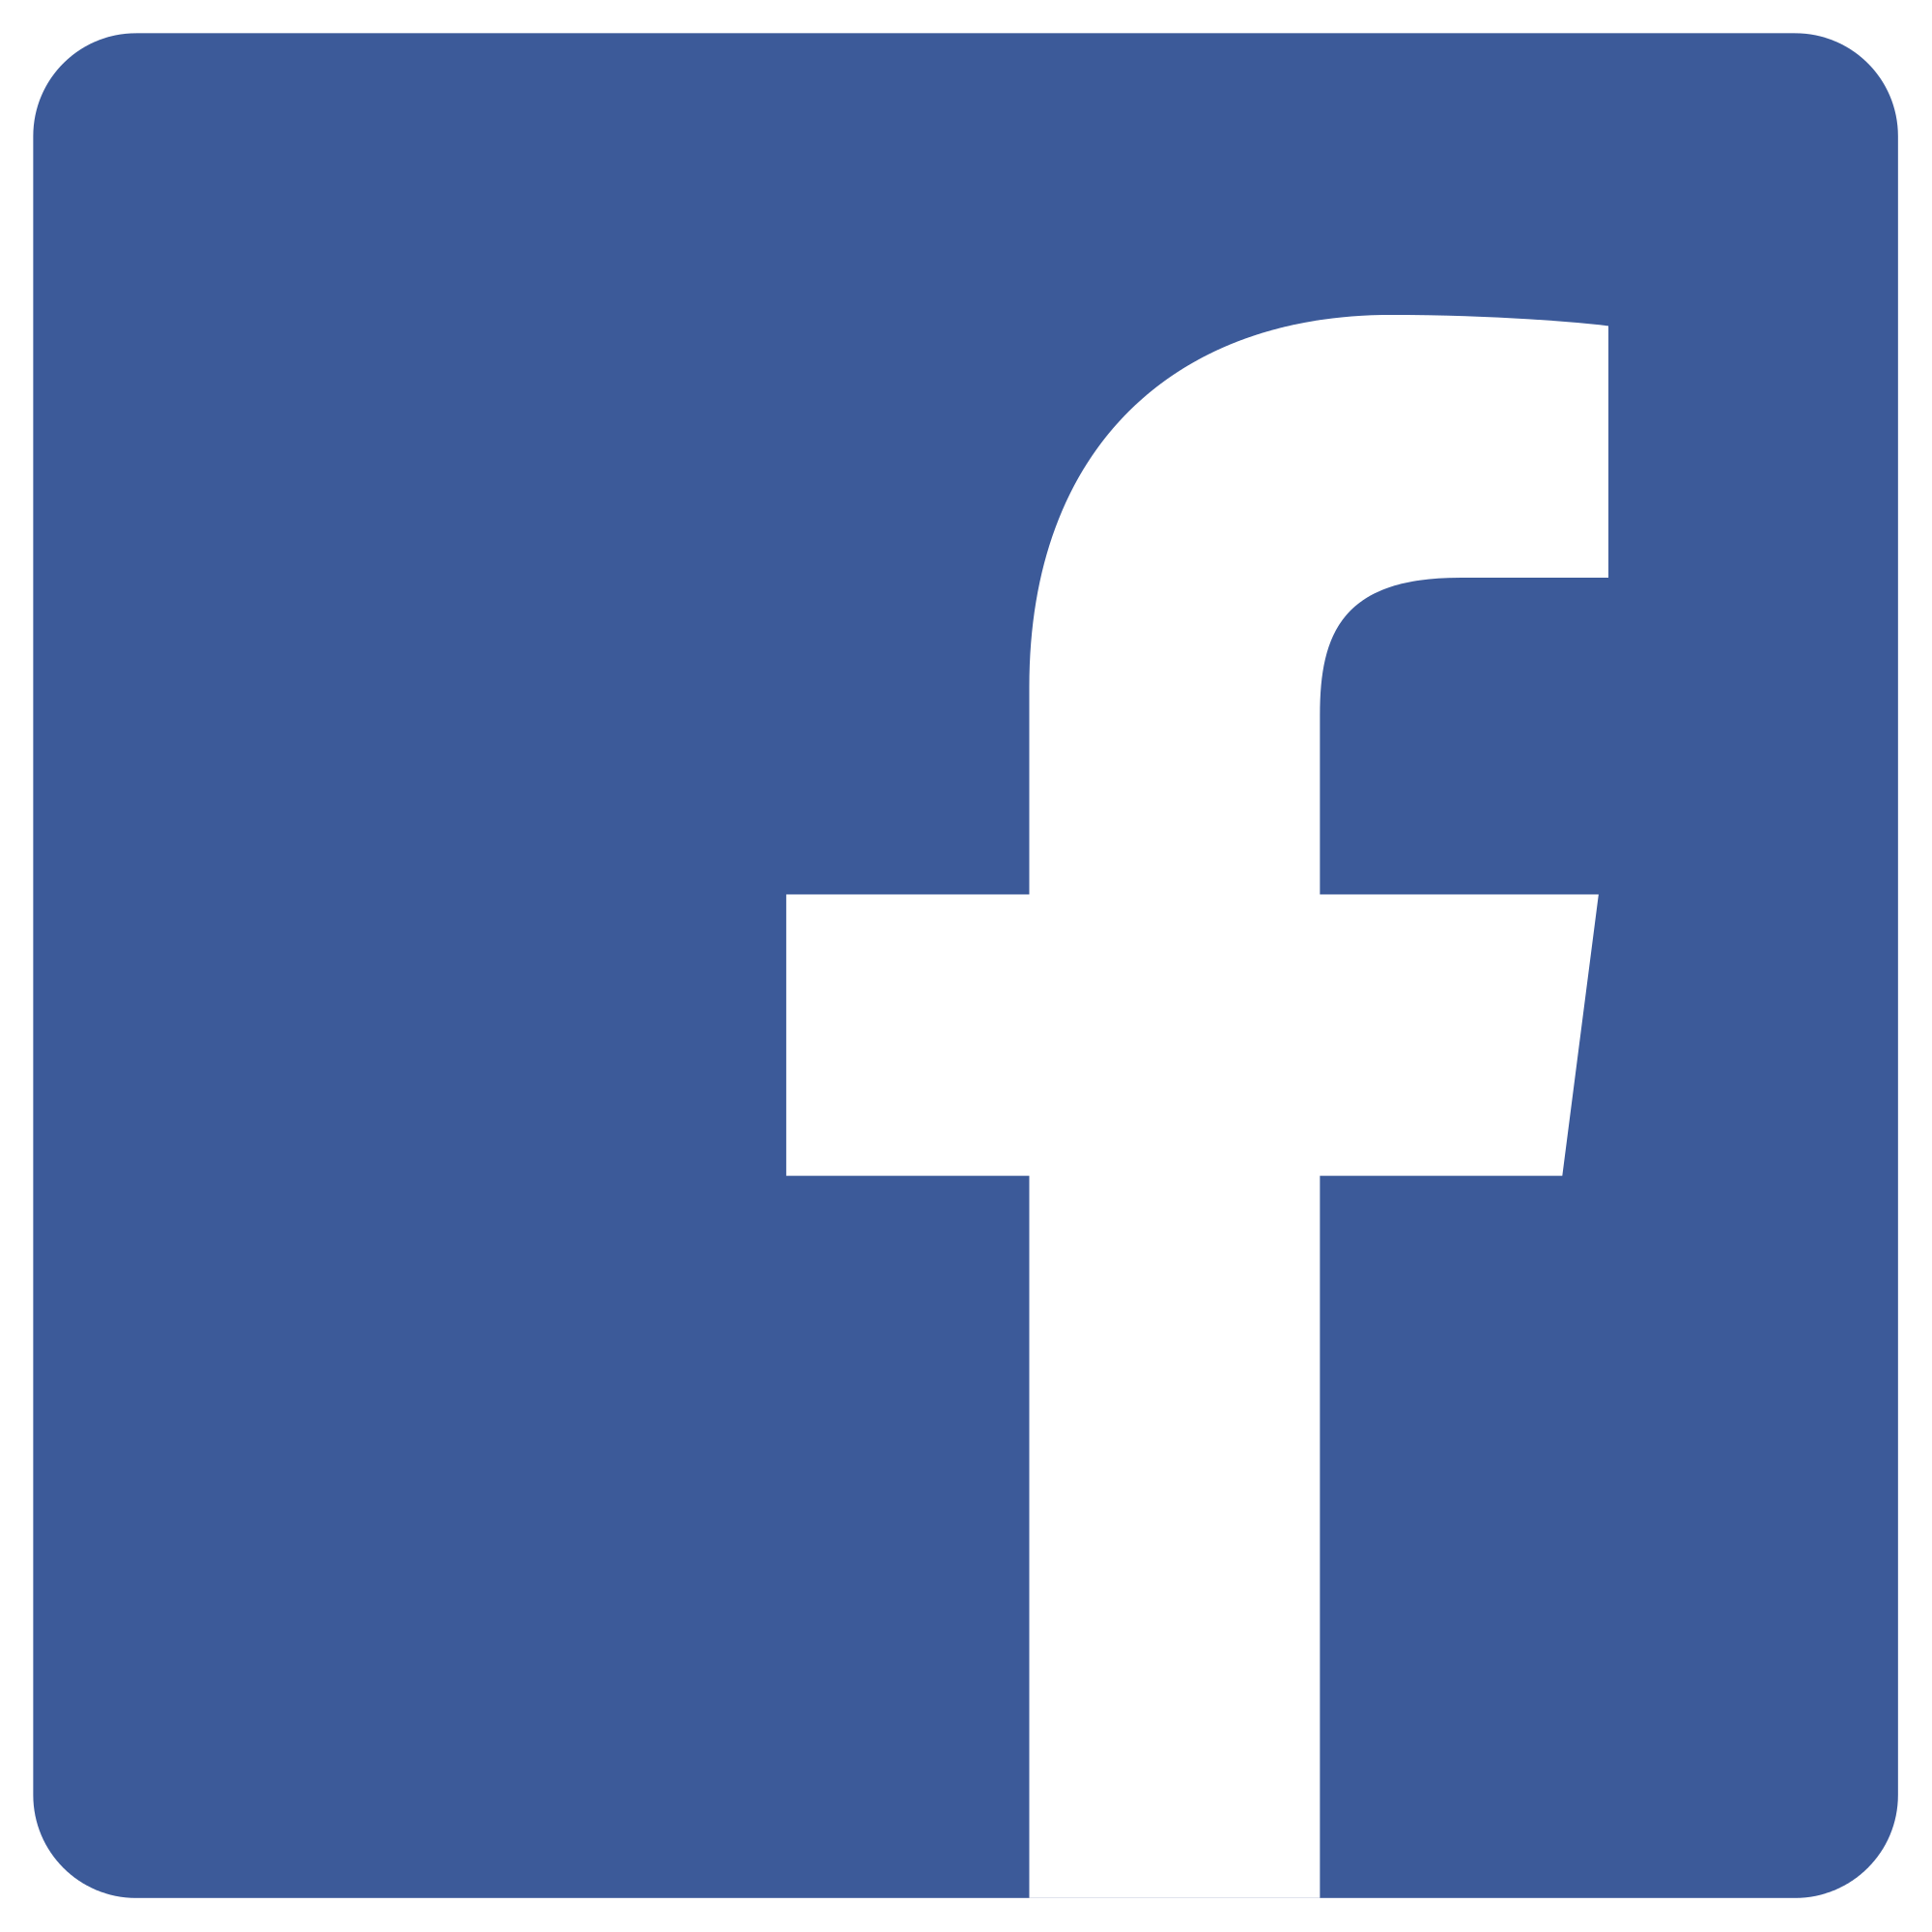 facebook logos PNG19748